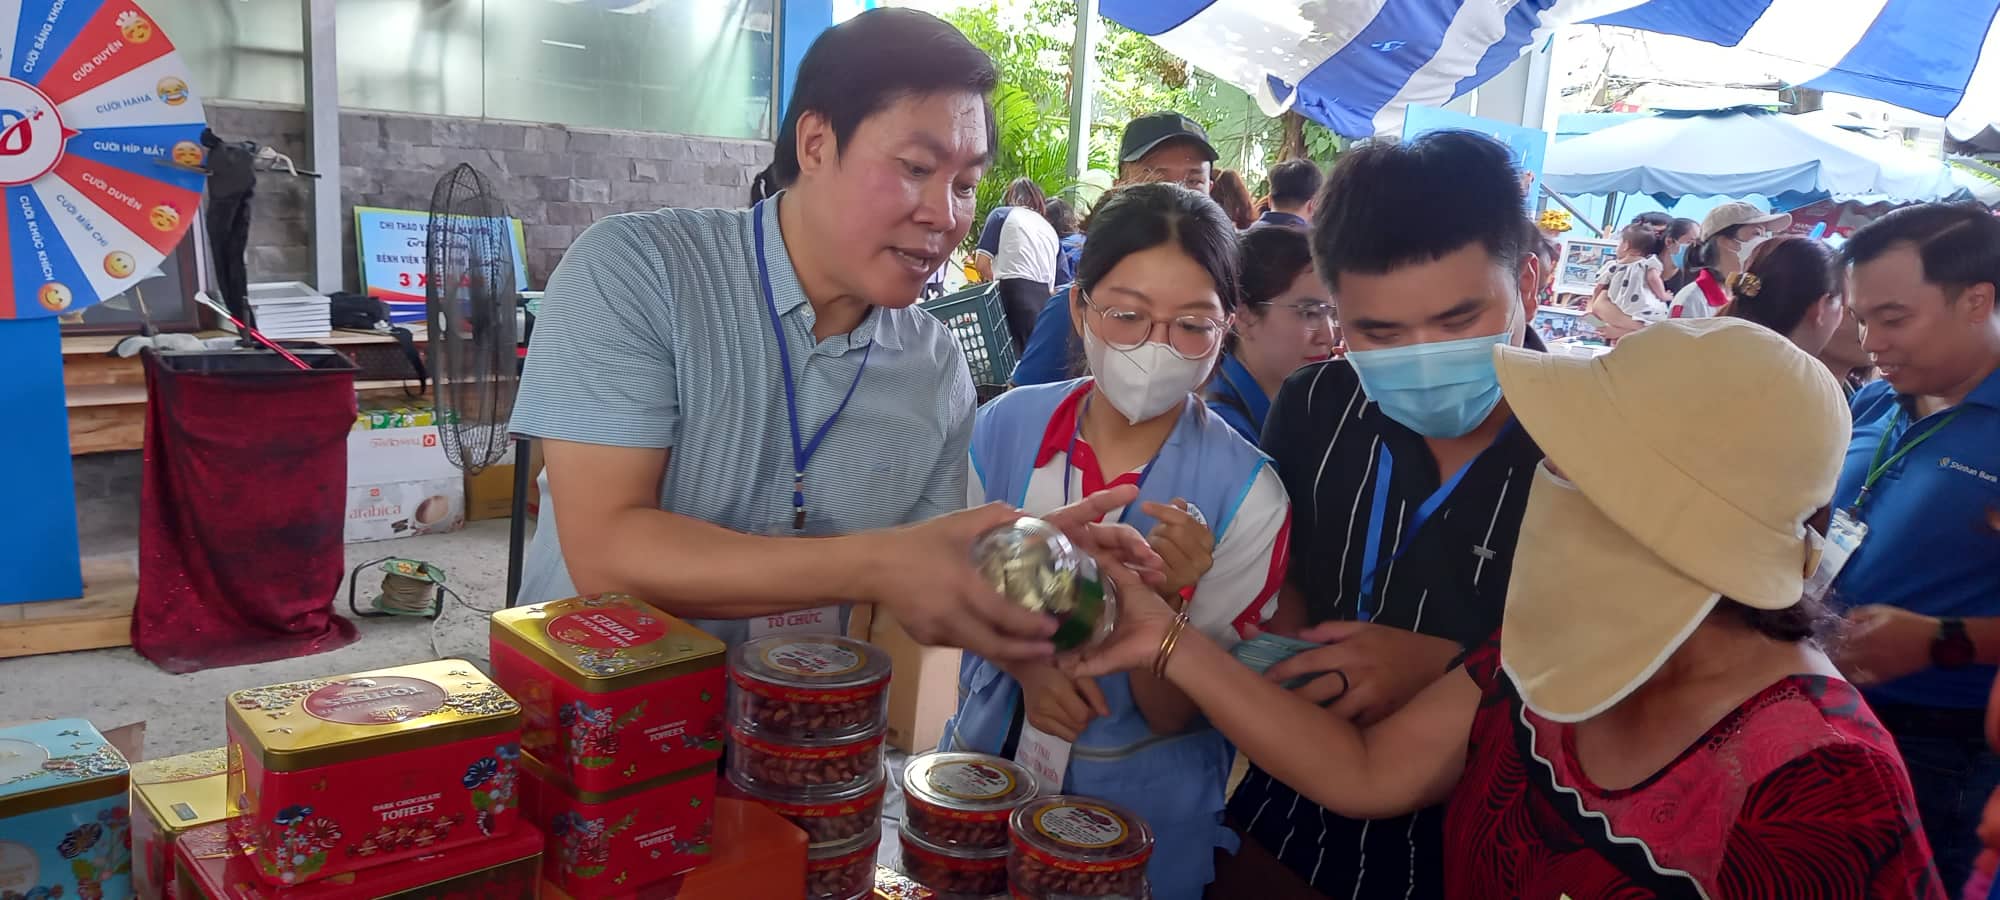 Phiên chợ 0 đồng đang trở thành một trào lưu phổ biến tại Việt Nam. Hãy xem các hình ảnh để tìm hiểu cách mà các hoạt động này giúp đỡ người dân đang gặp khó khăn và cũng để tham gia dự án tuyệt vời này nếu bạn có thể!